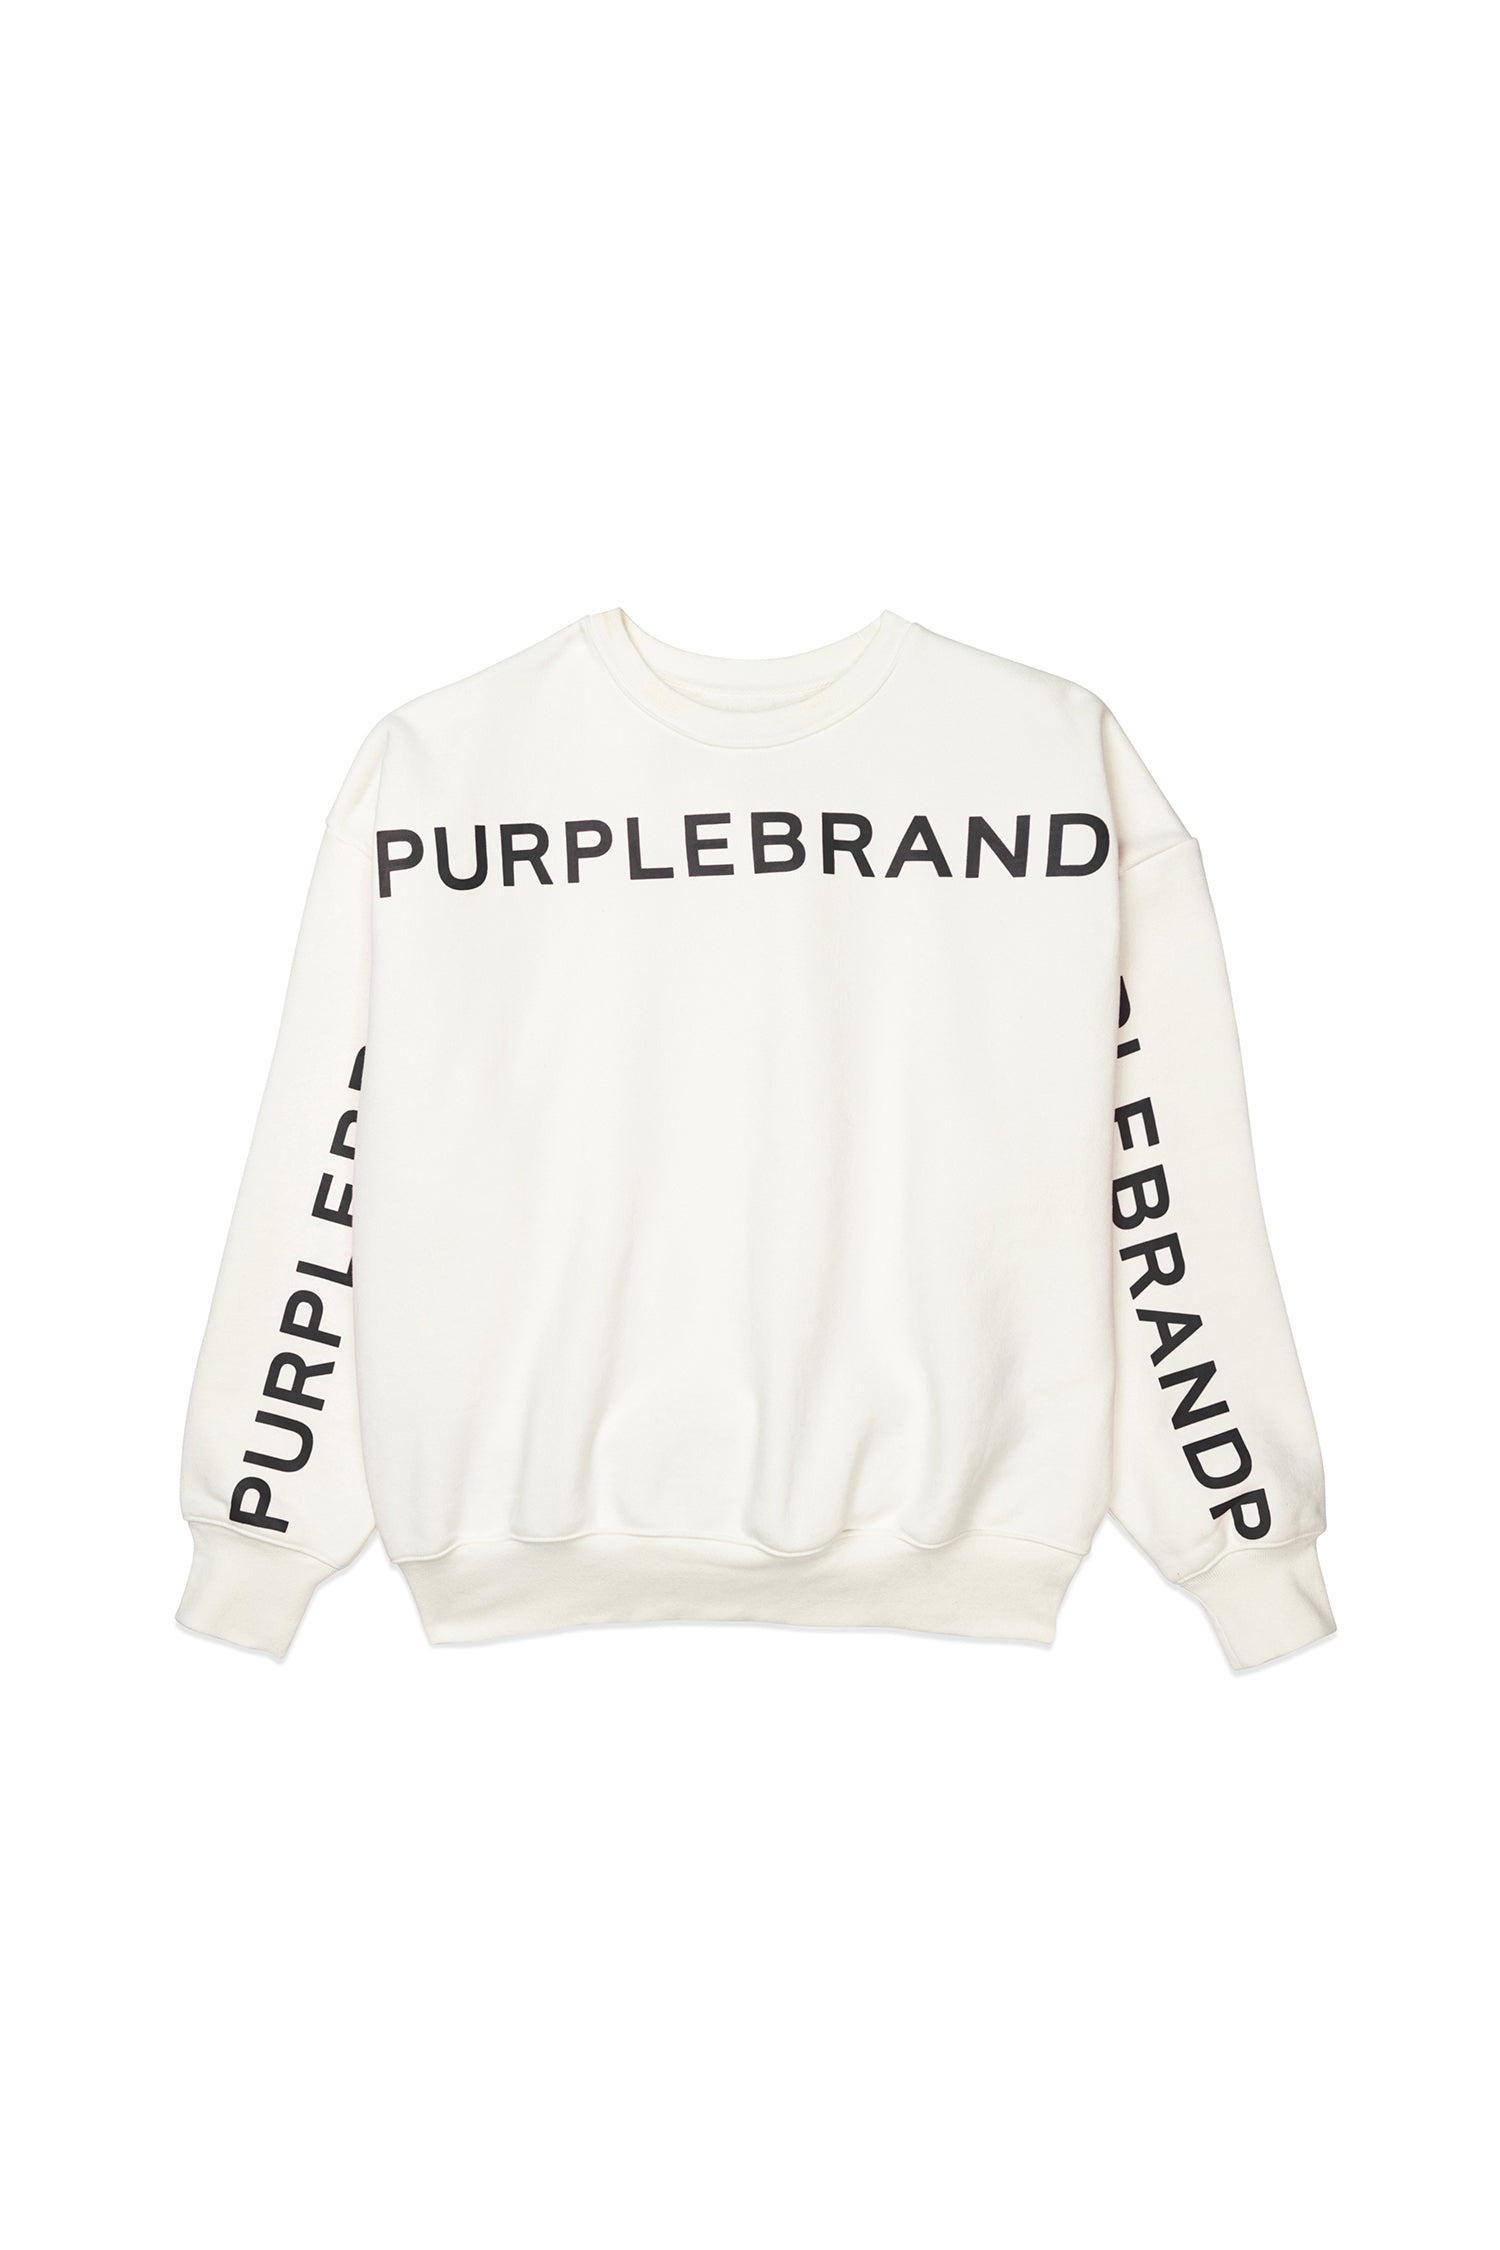 Purple Brand Cutout Wordmark Hoodie